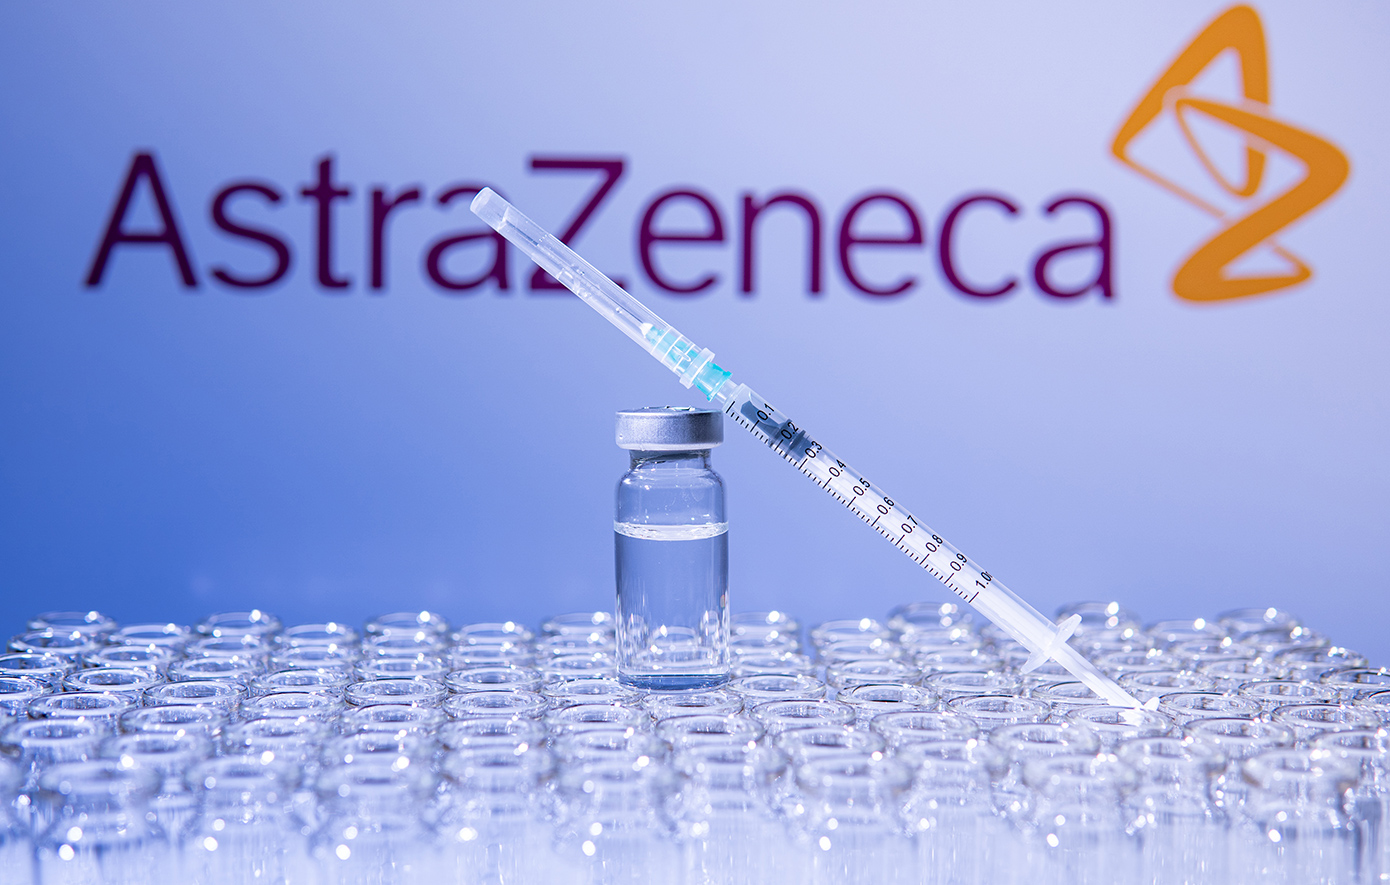 Απόσυρση εμβολίου της AstraZeneca: Ο πρόεδρος του ΕΟΦ απαντά αν υπάρχει λόγος ανησυχίας στην Ελλάδα